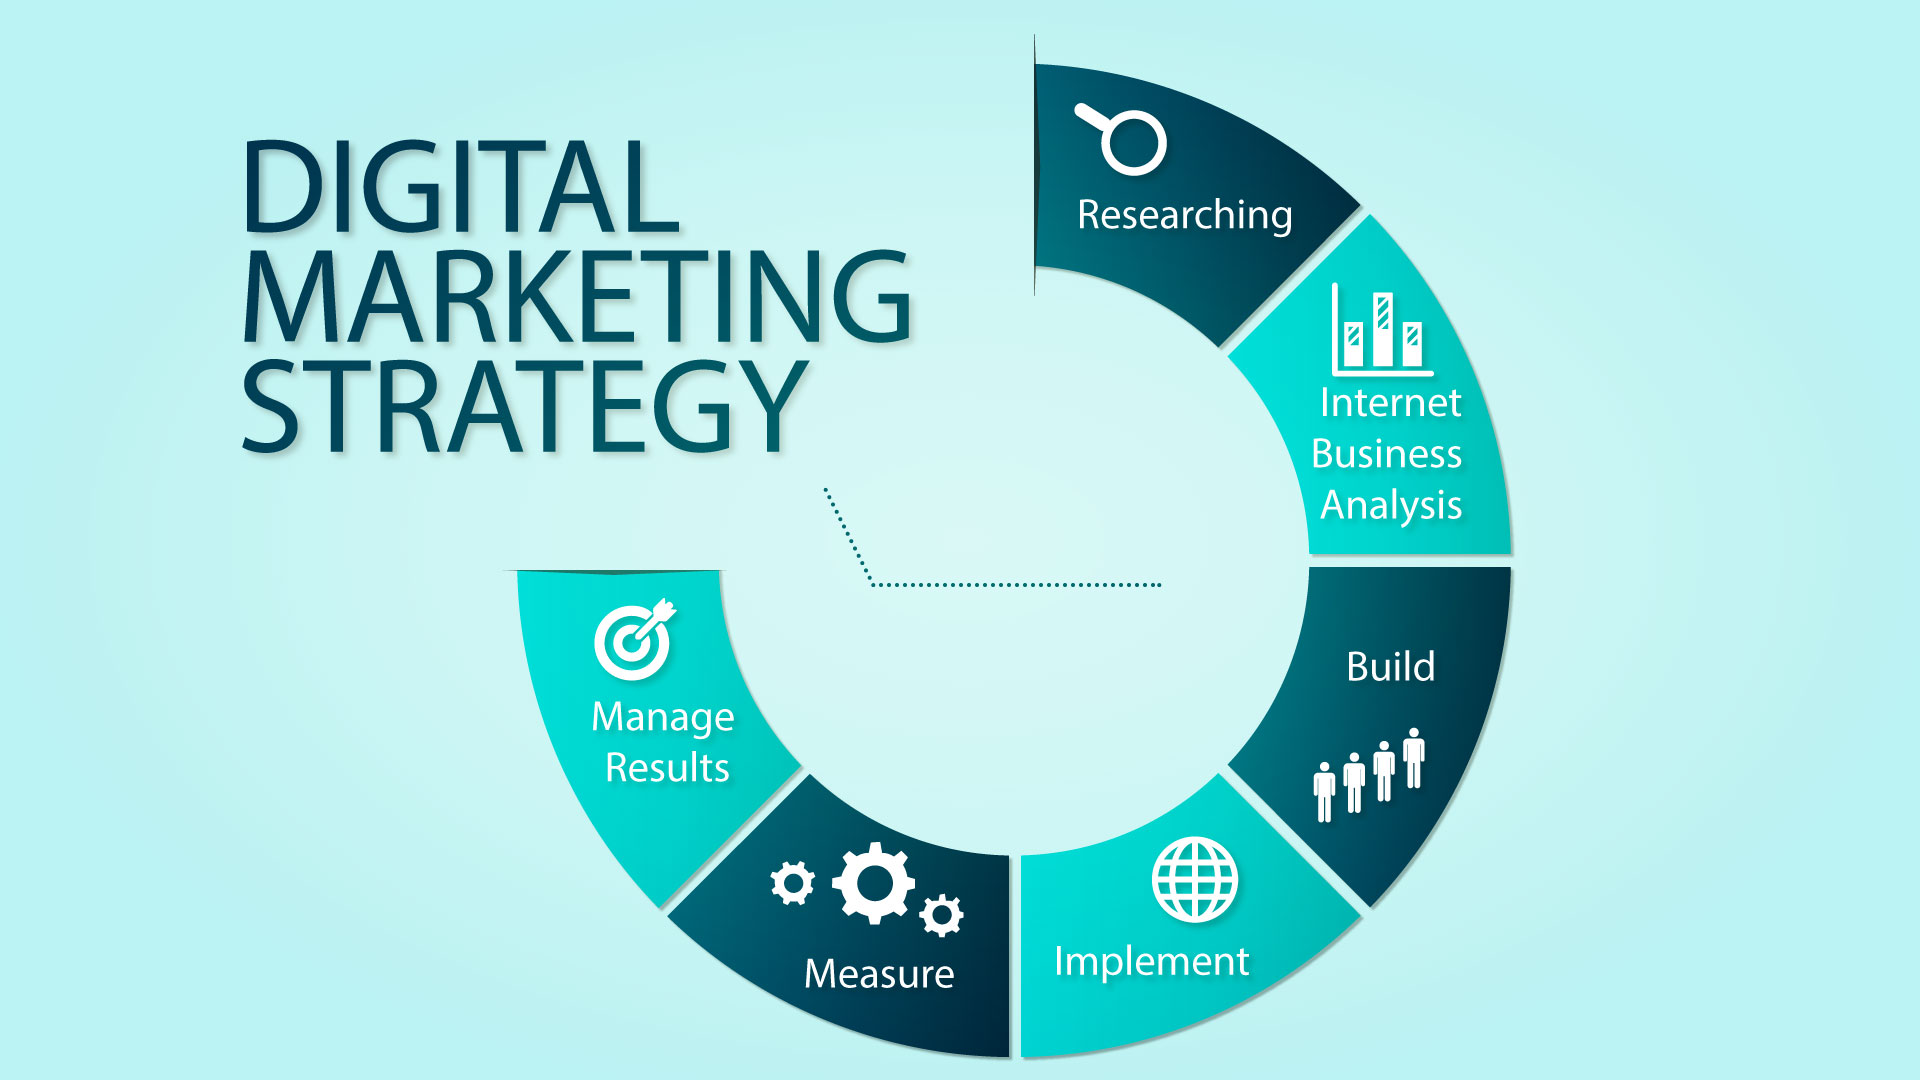 Kế hoạch digital marketing giúp doanh nghiệp xác định được mục tiêu, hành động trong một khoảng thời gian nhất định